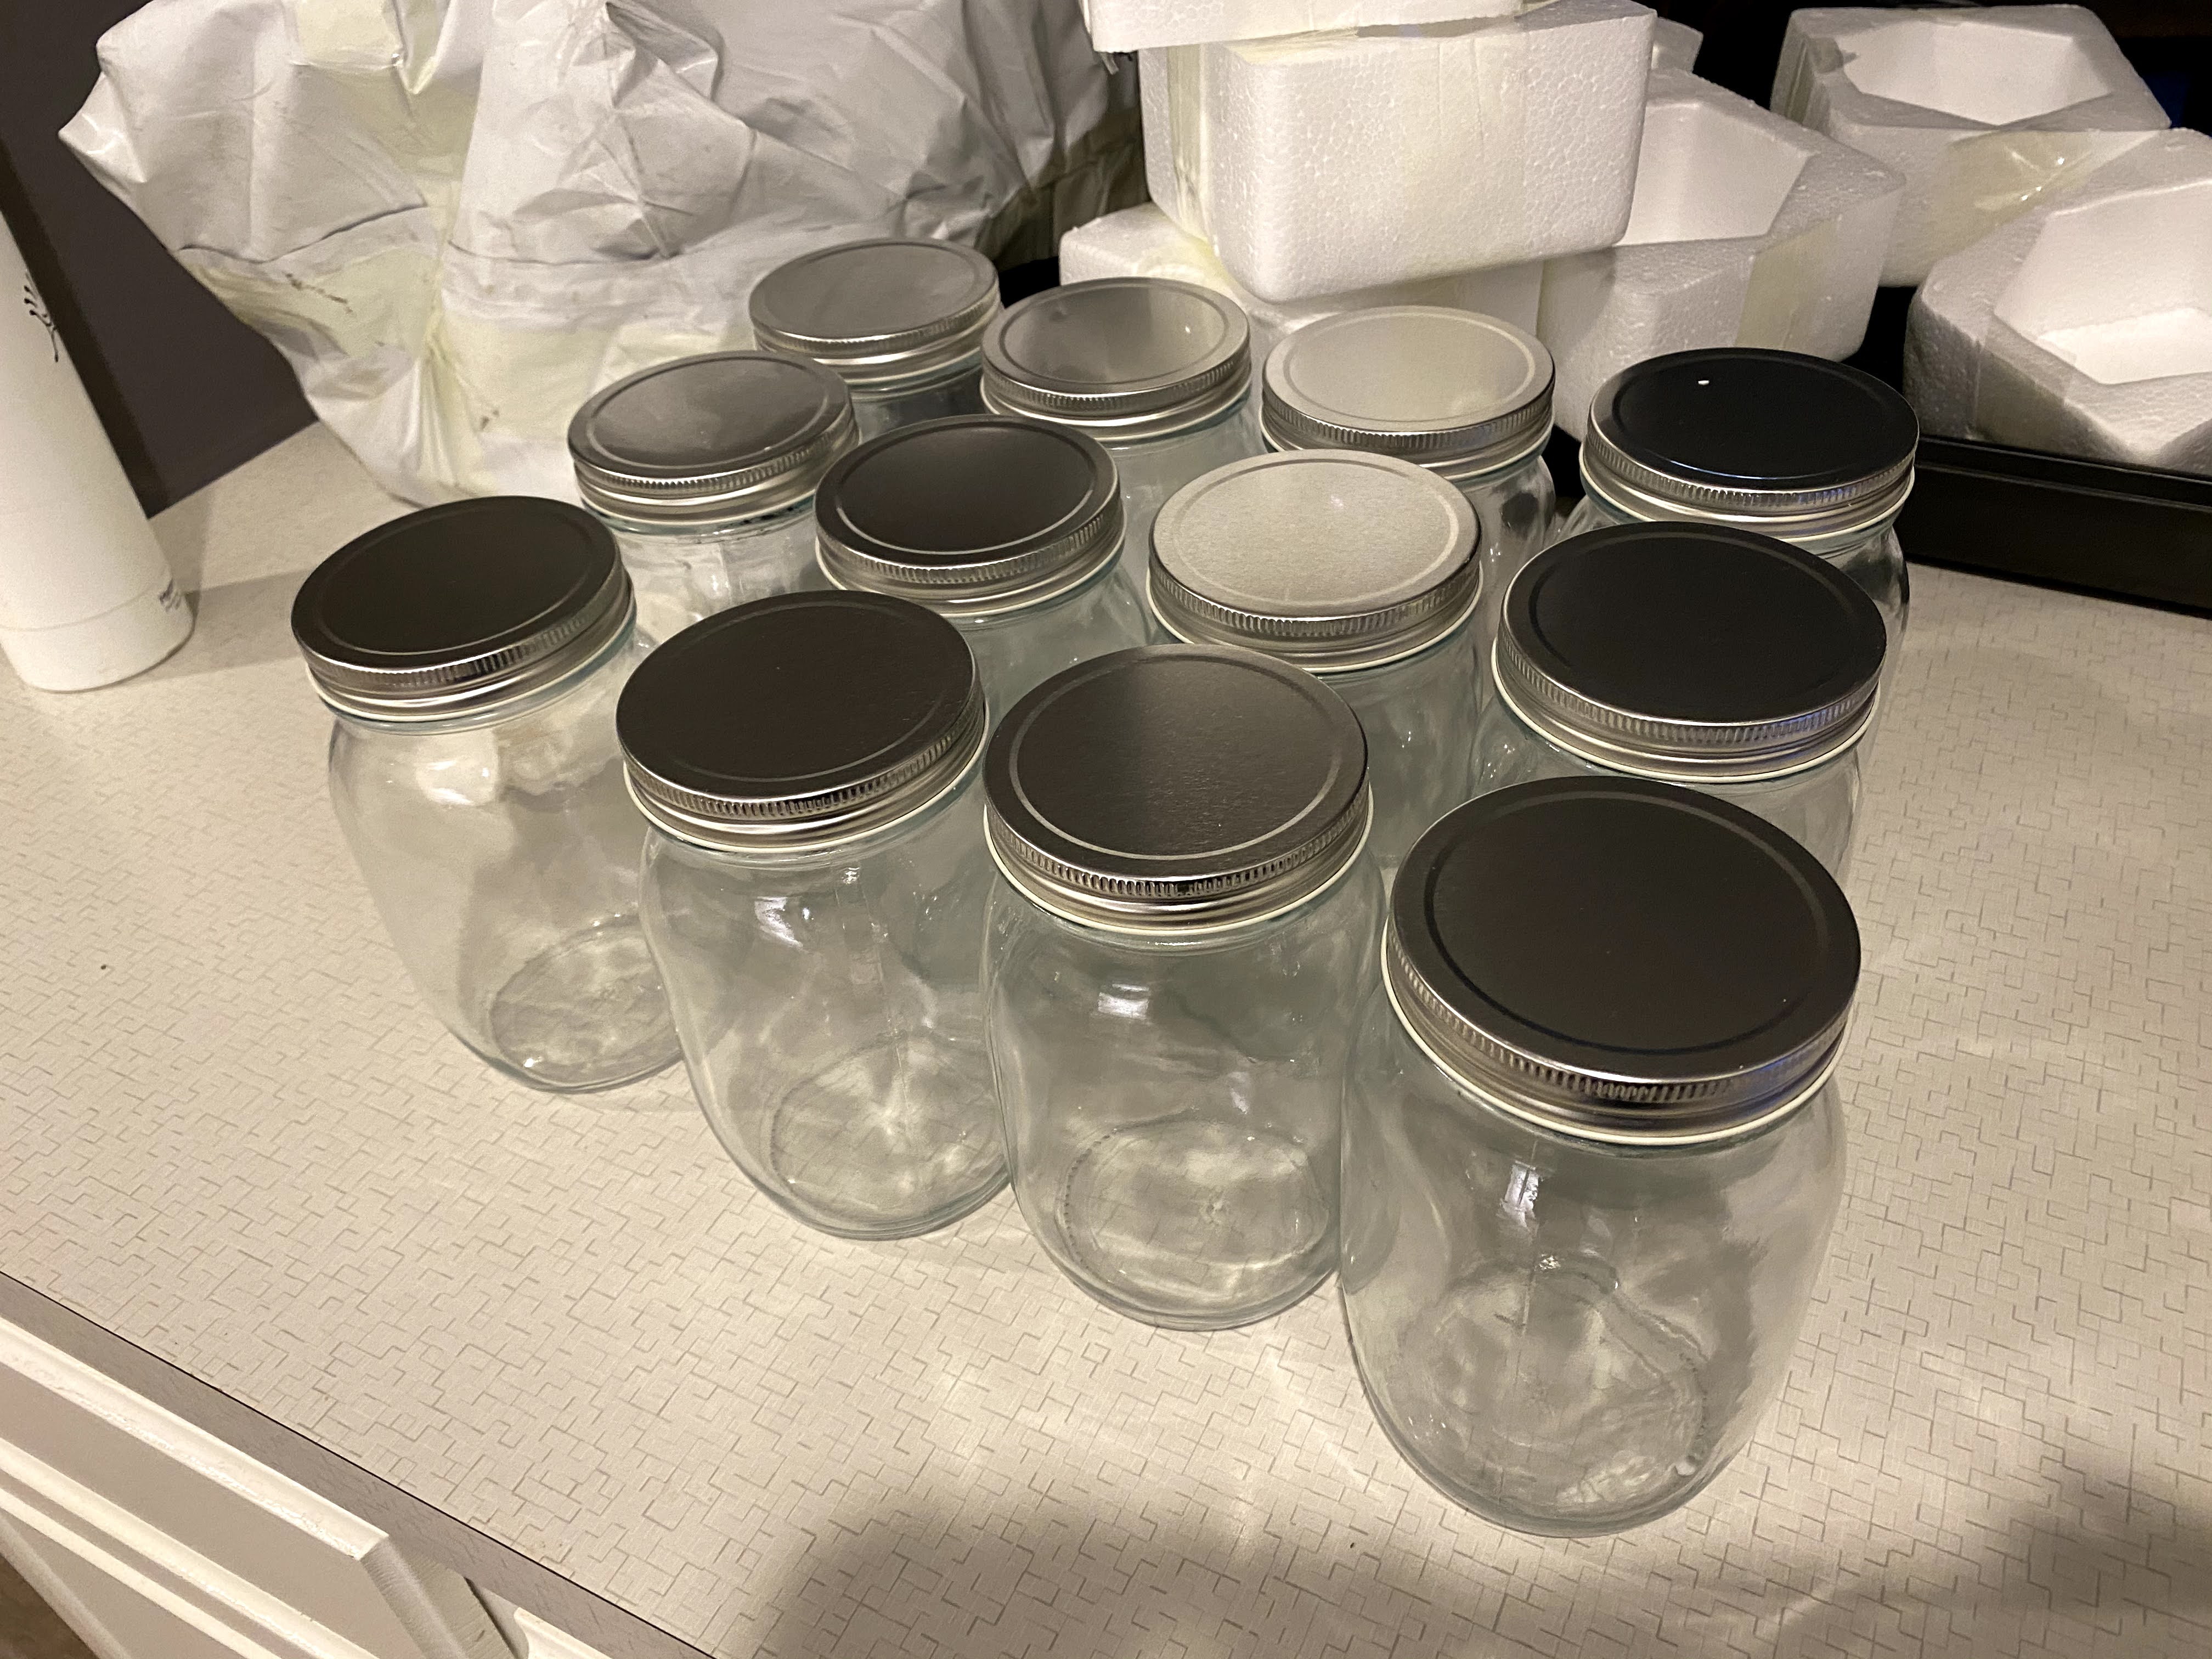 12 jars we received.  We ordered 144 jars.